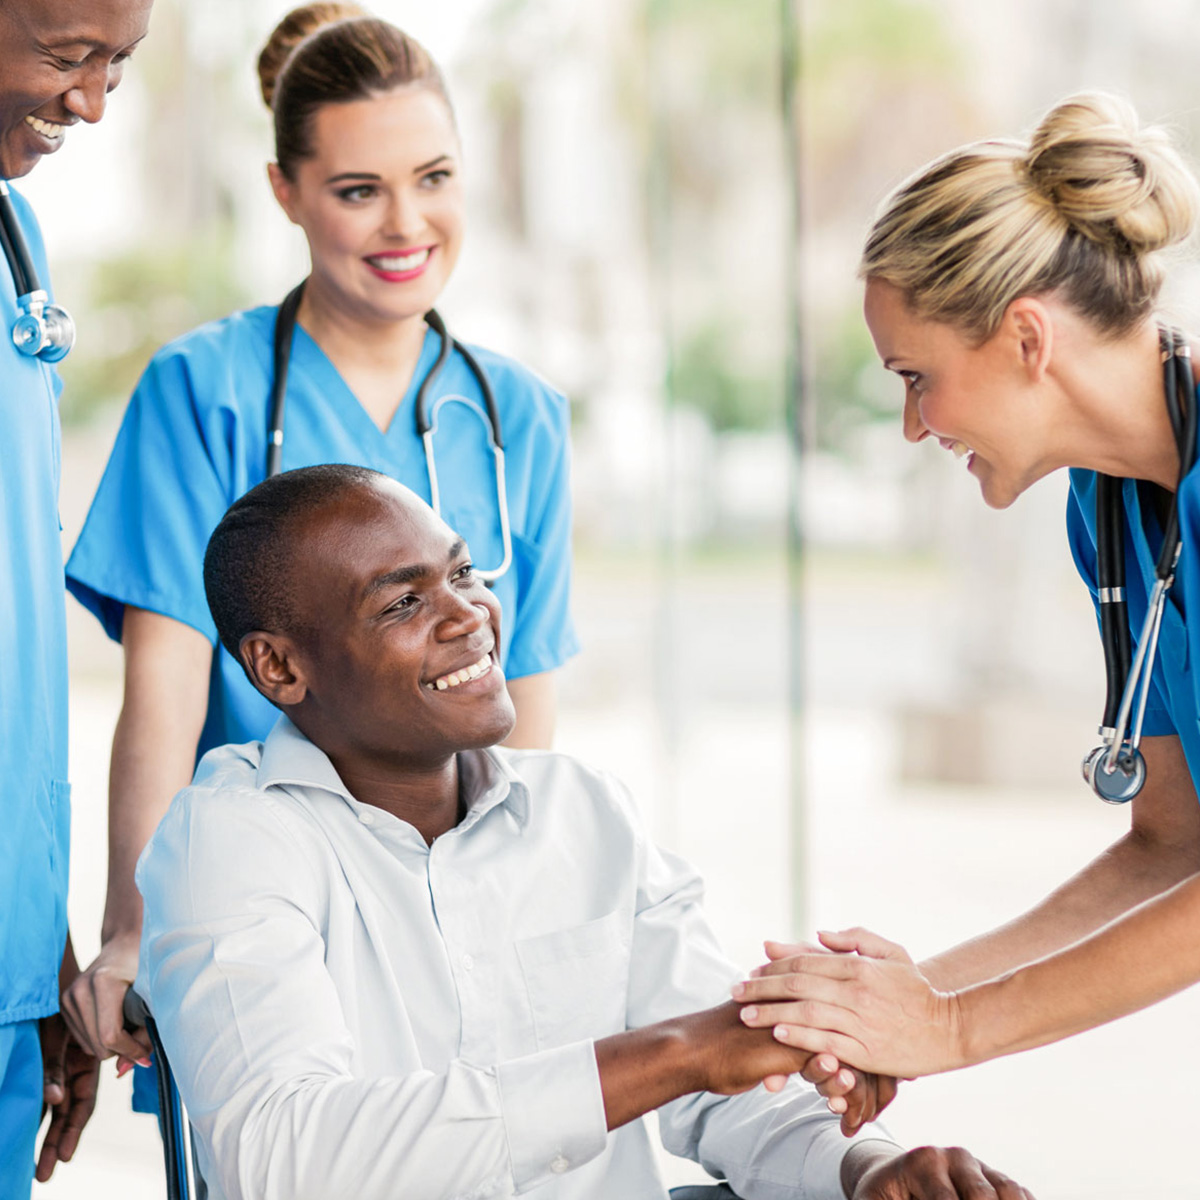 Hombre sonriente en una silla de ruedas, tomando la mano de una trabajadora de atención médica frente a él y otros dos profesionales sonrientes detrás.